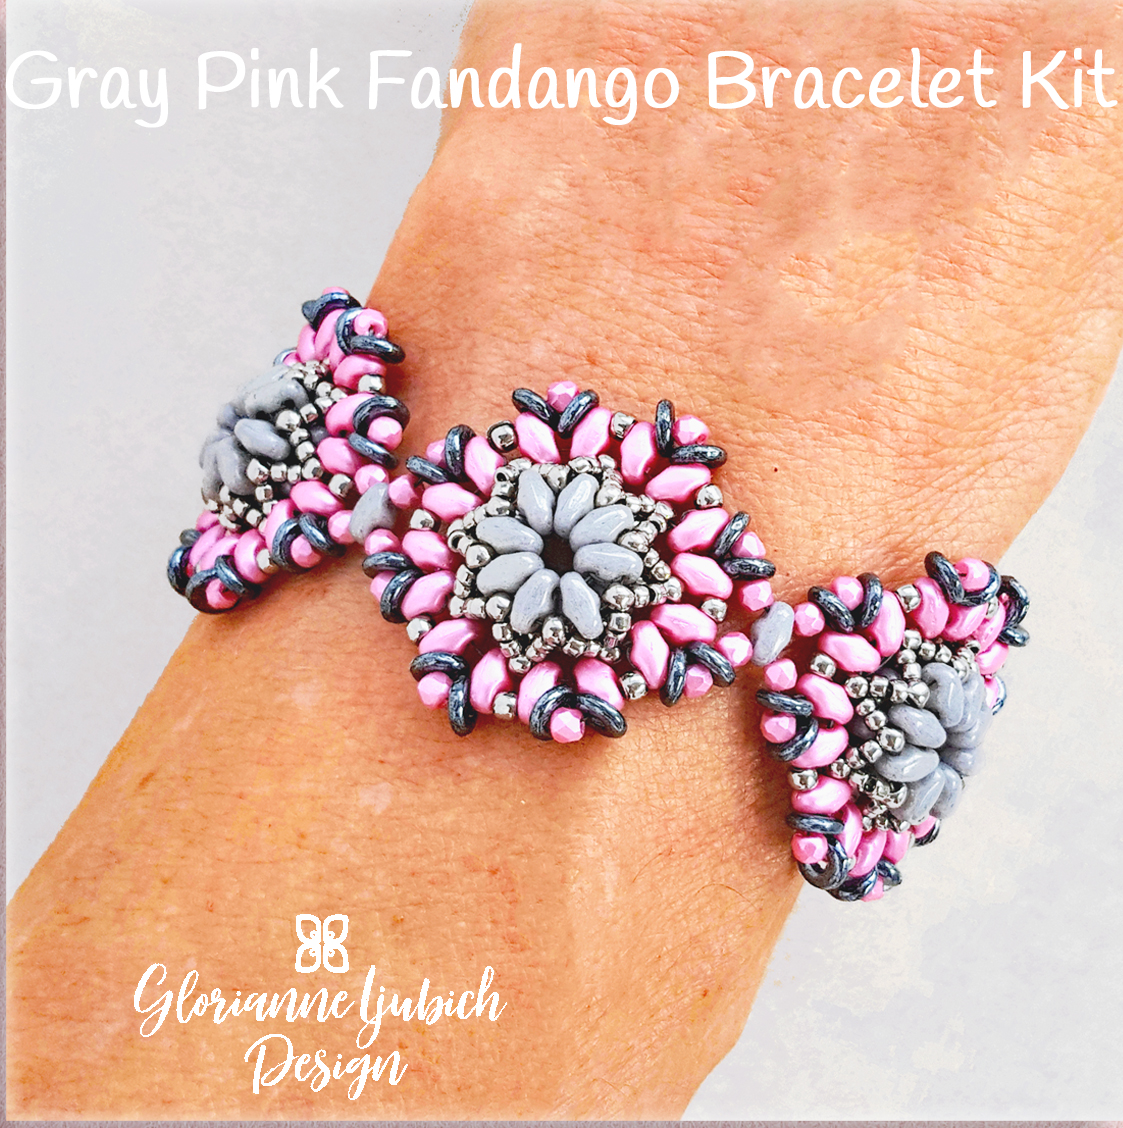 GrayPink Fandango Bracelet Bead Kit